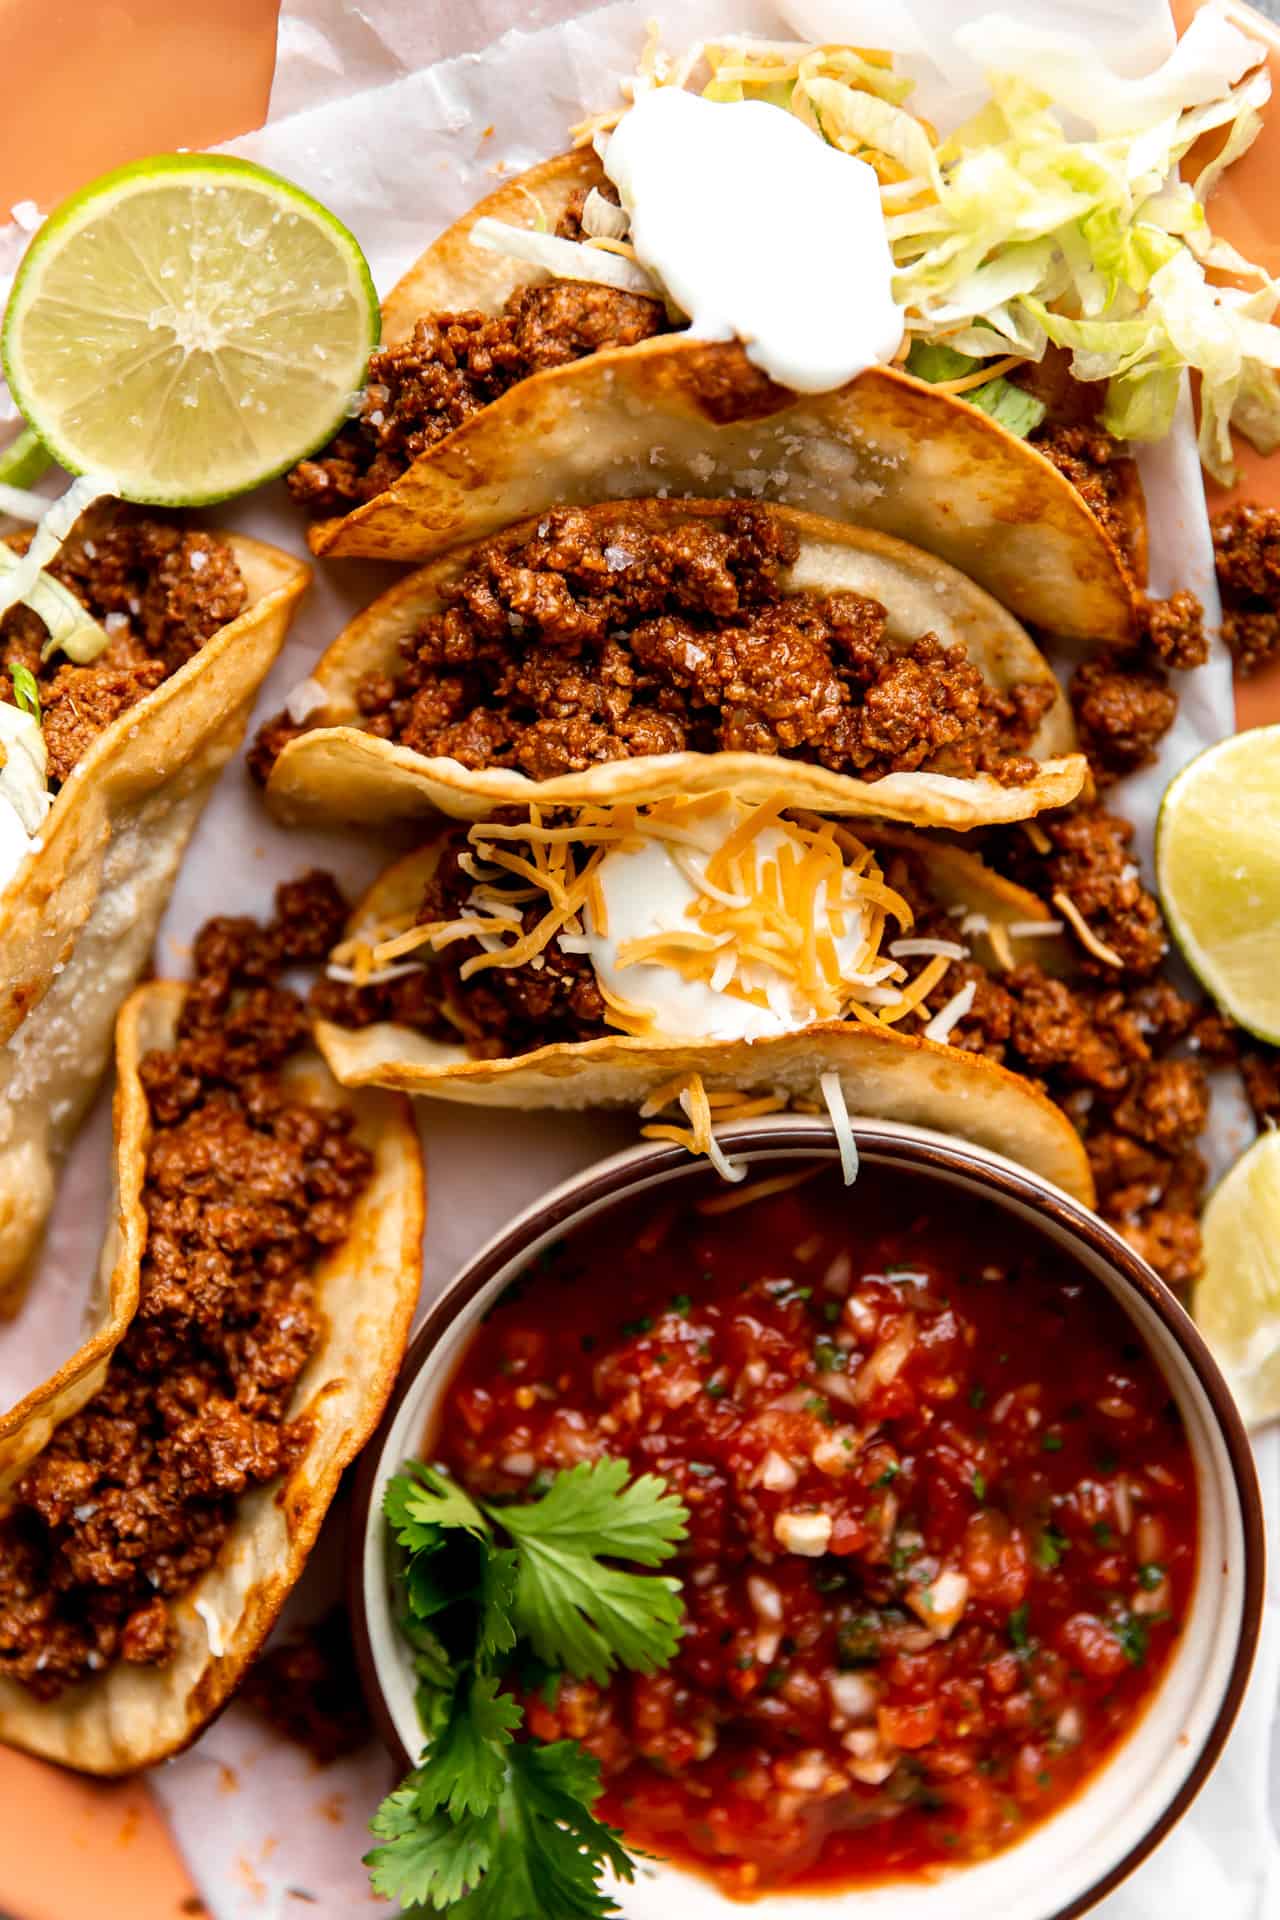 Assiette de tacos de bœuf haché sur des tortillas de maïs frites, garnis de crème aigre et servis avec de la salsa.